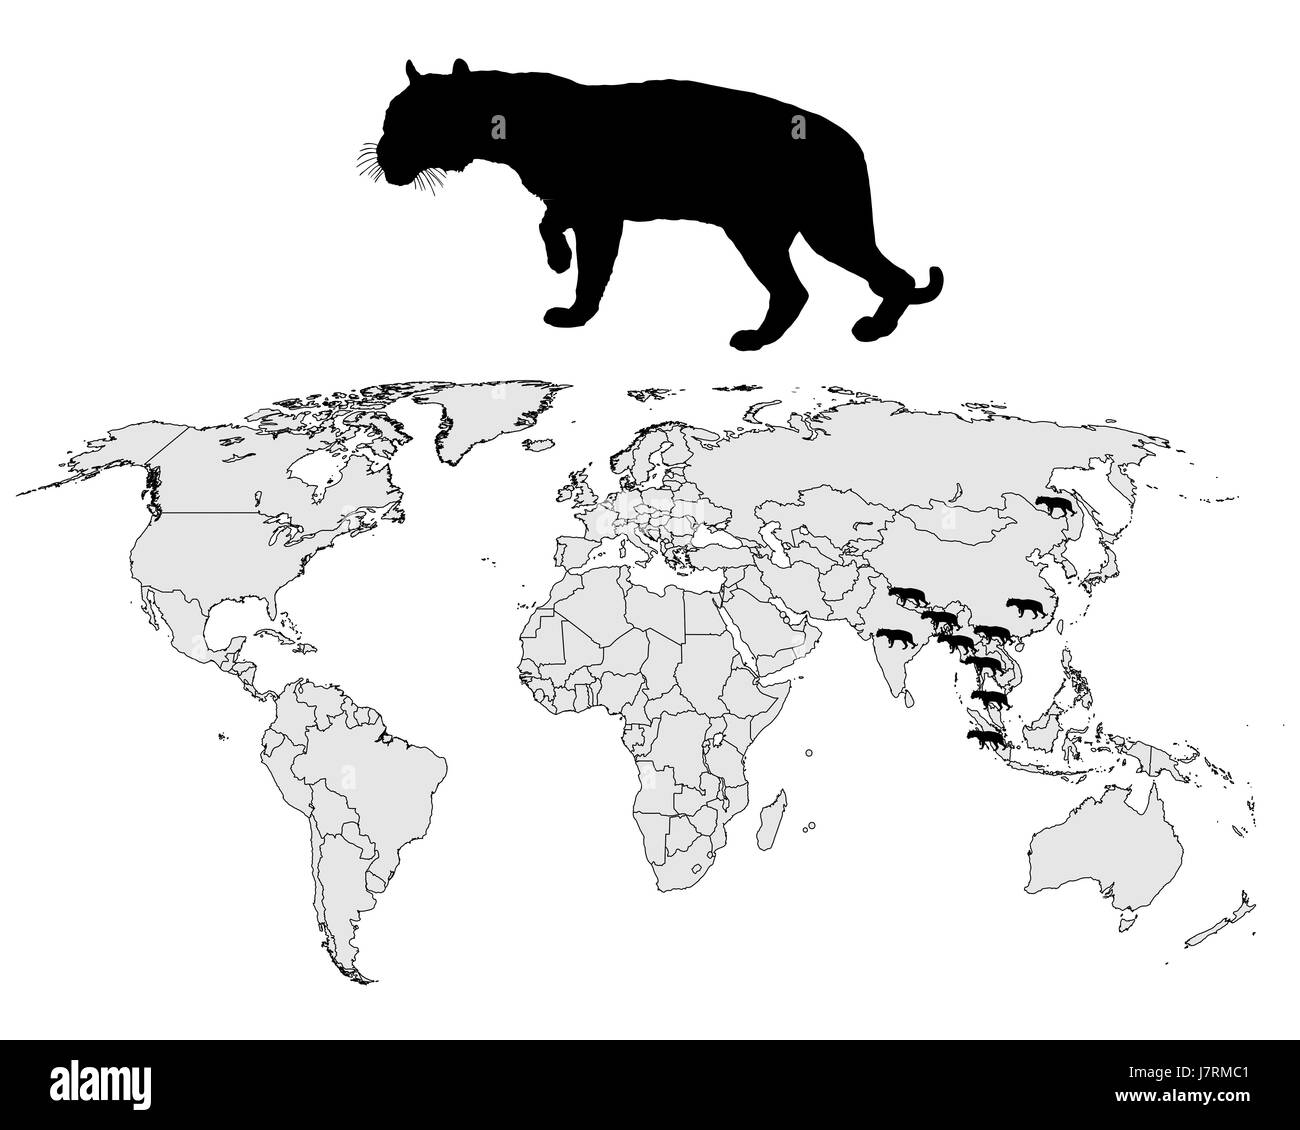 En option signal signe animal asia grand chat noir prédateur félin jetblack basané Banque D'Images